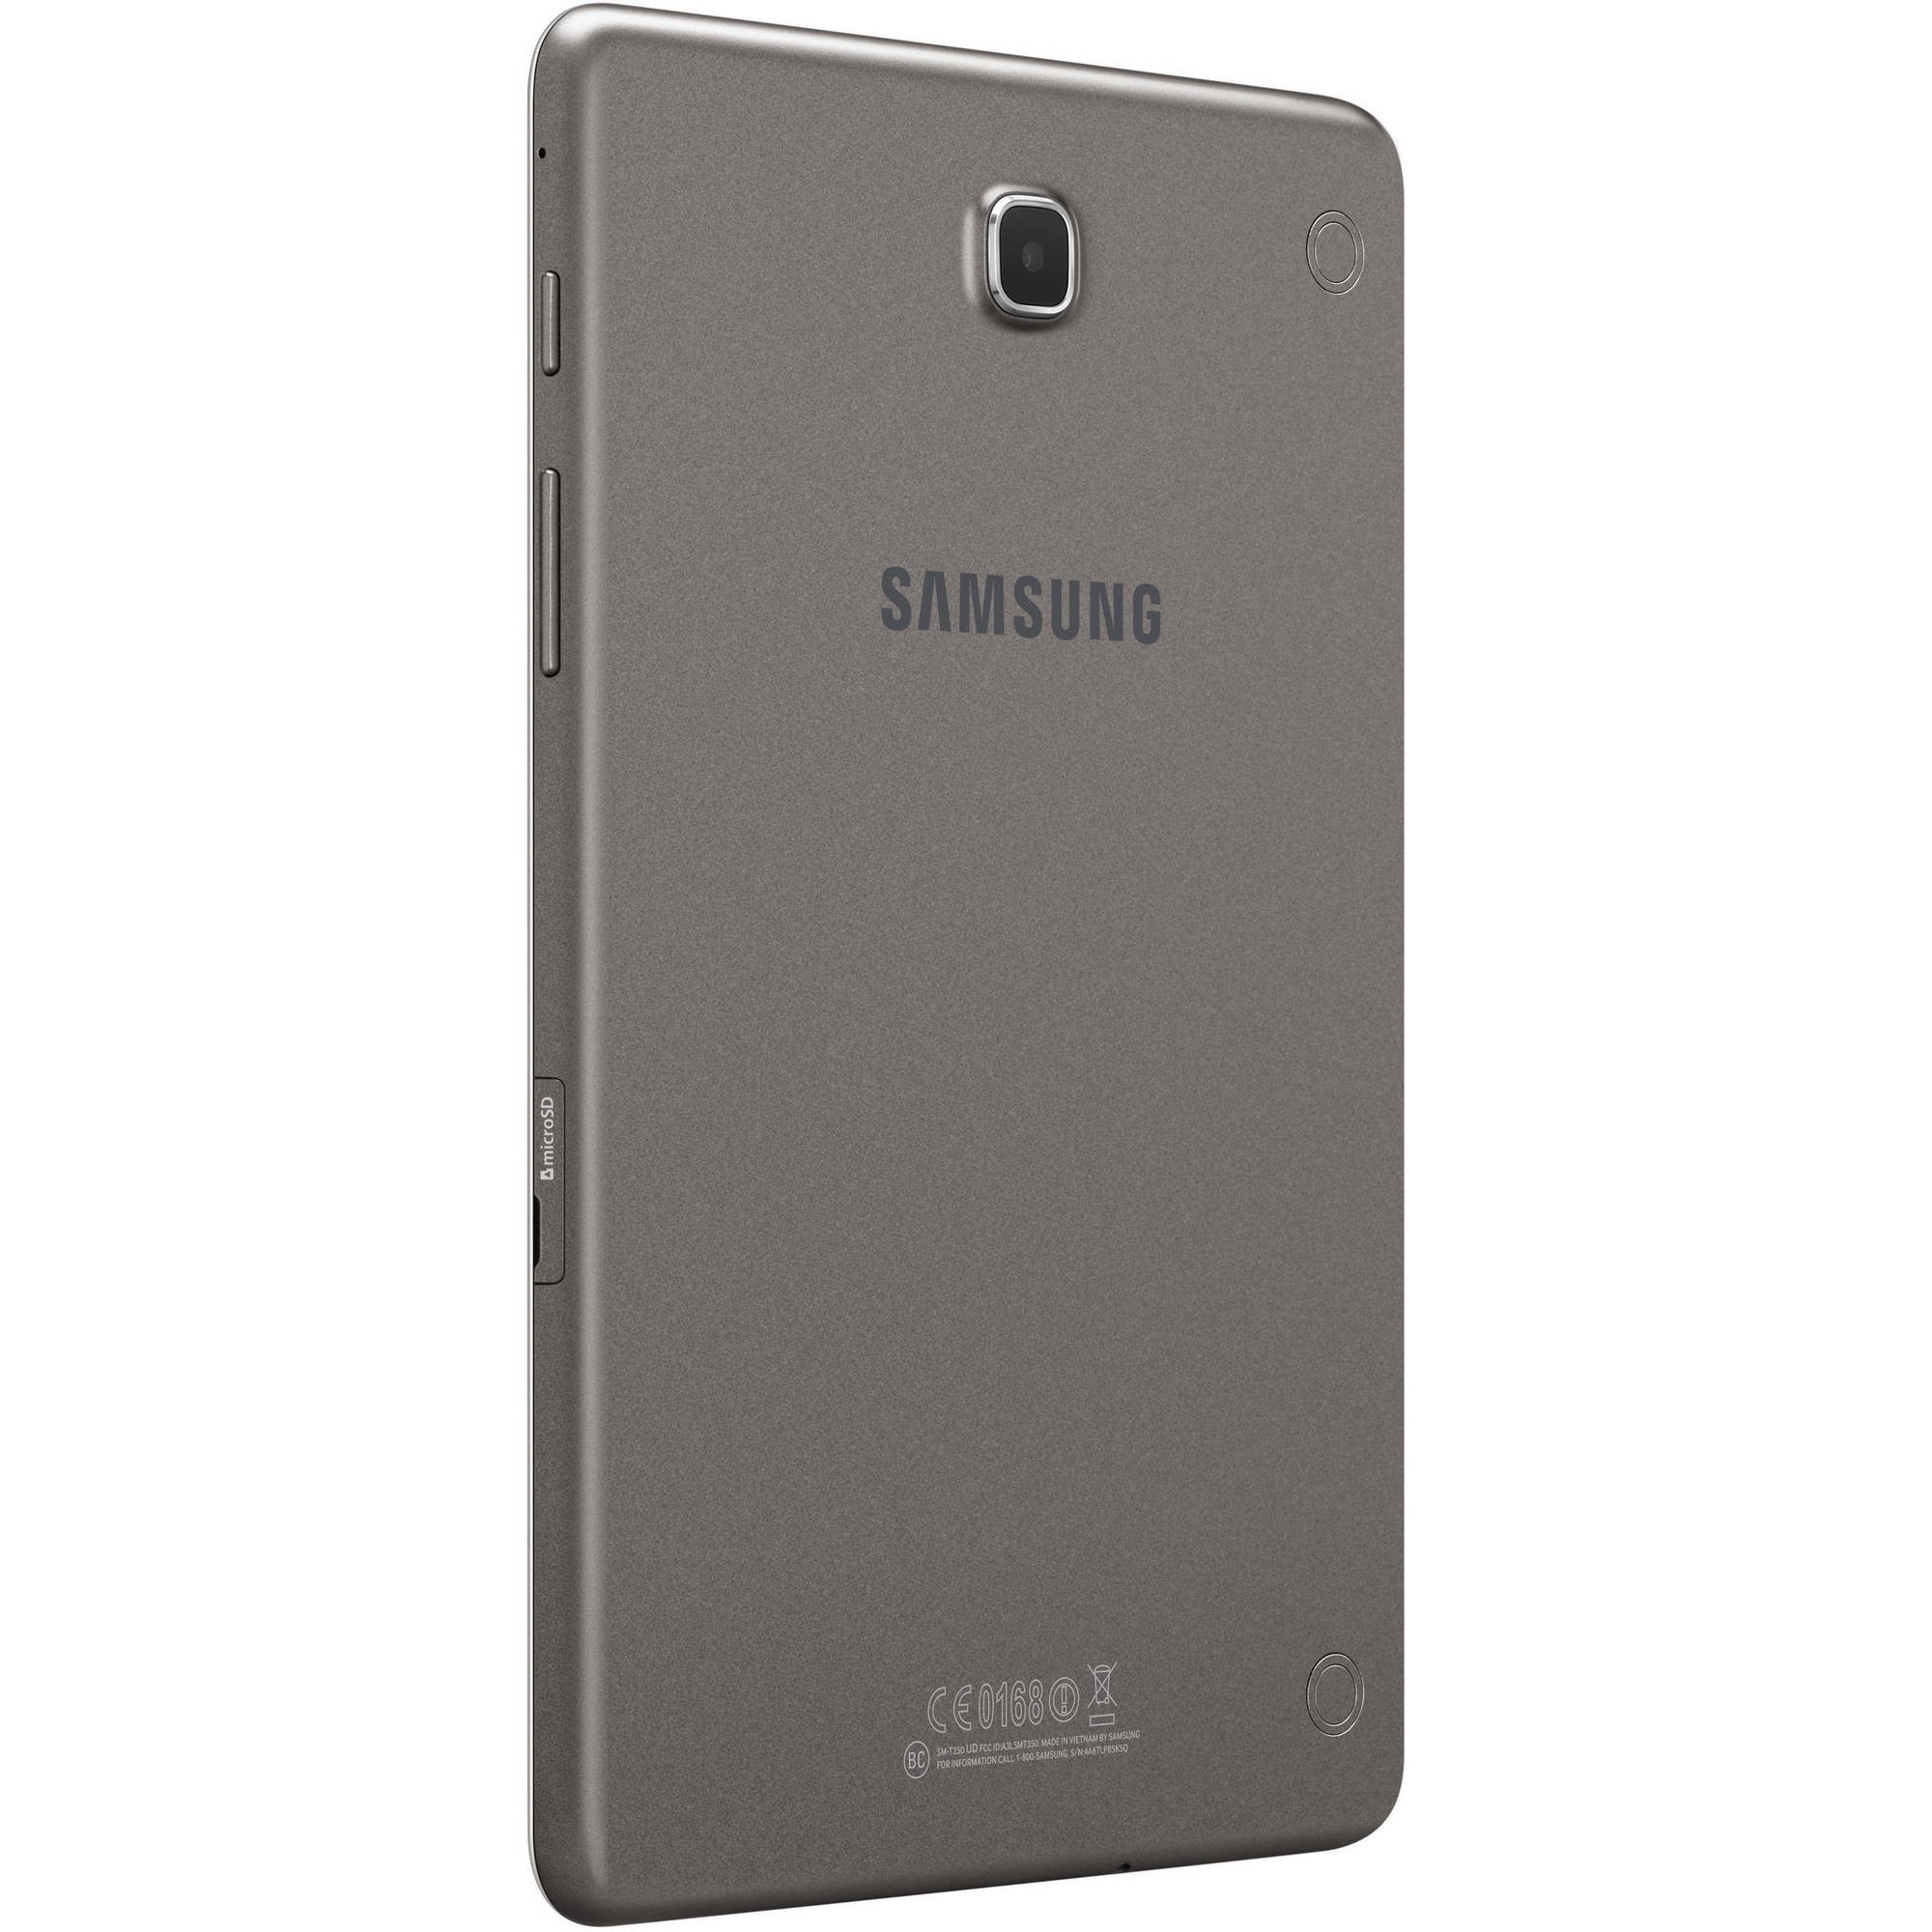 Galaxy S3 Parts Diagram Samsung Galaxy Tab A 8" Tablet 16gb Smoky Titanium Refurbished Of Galaxy S3 Parts Diagram